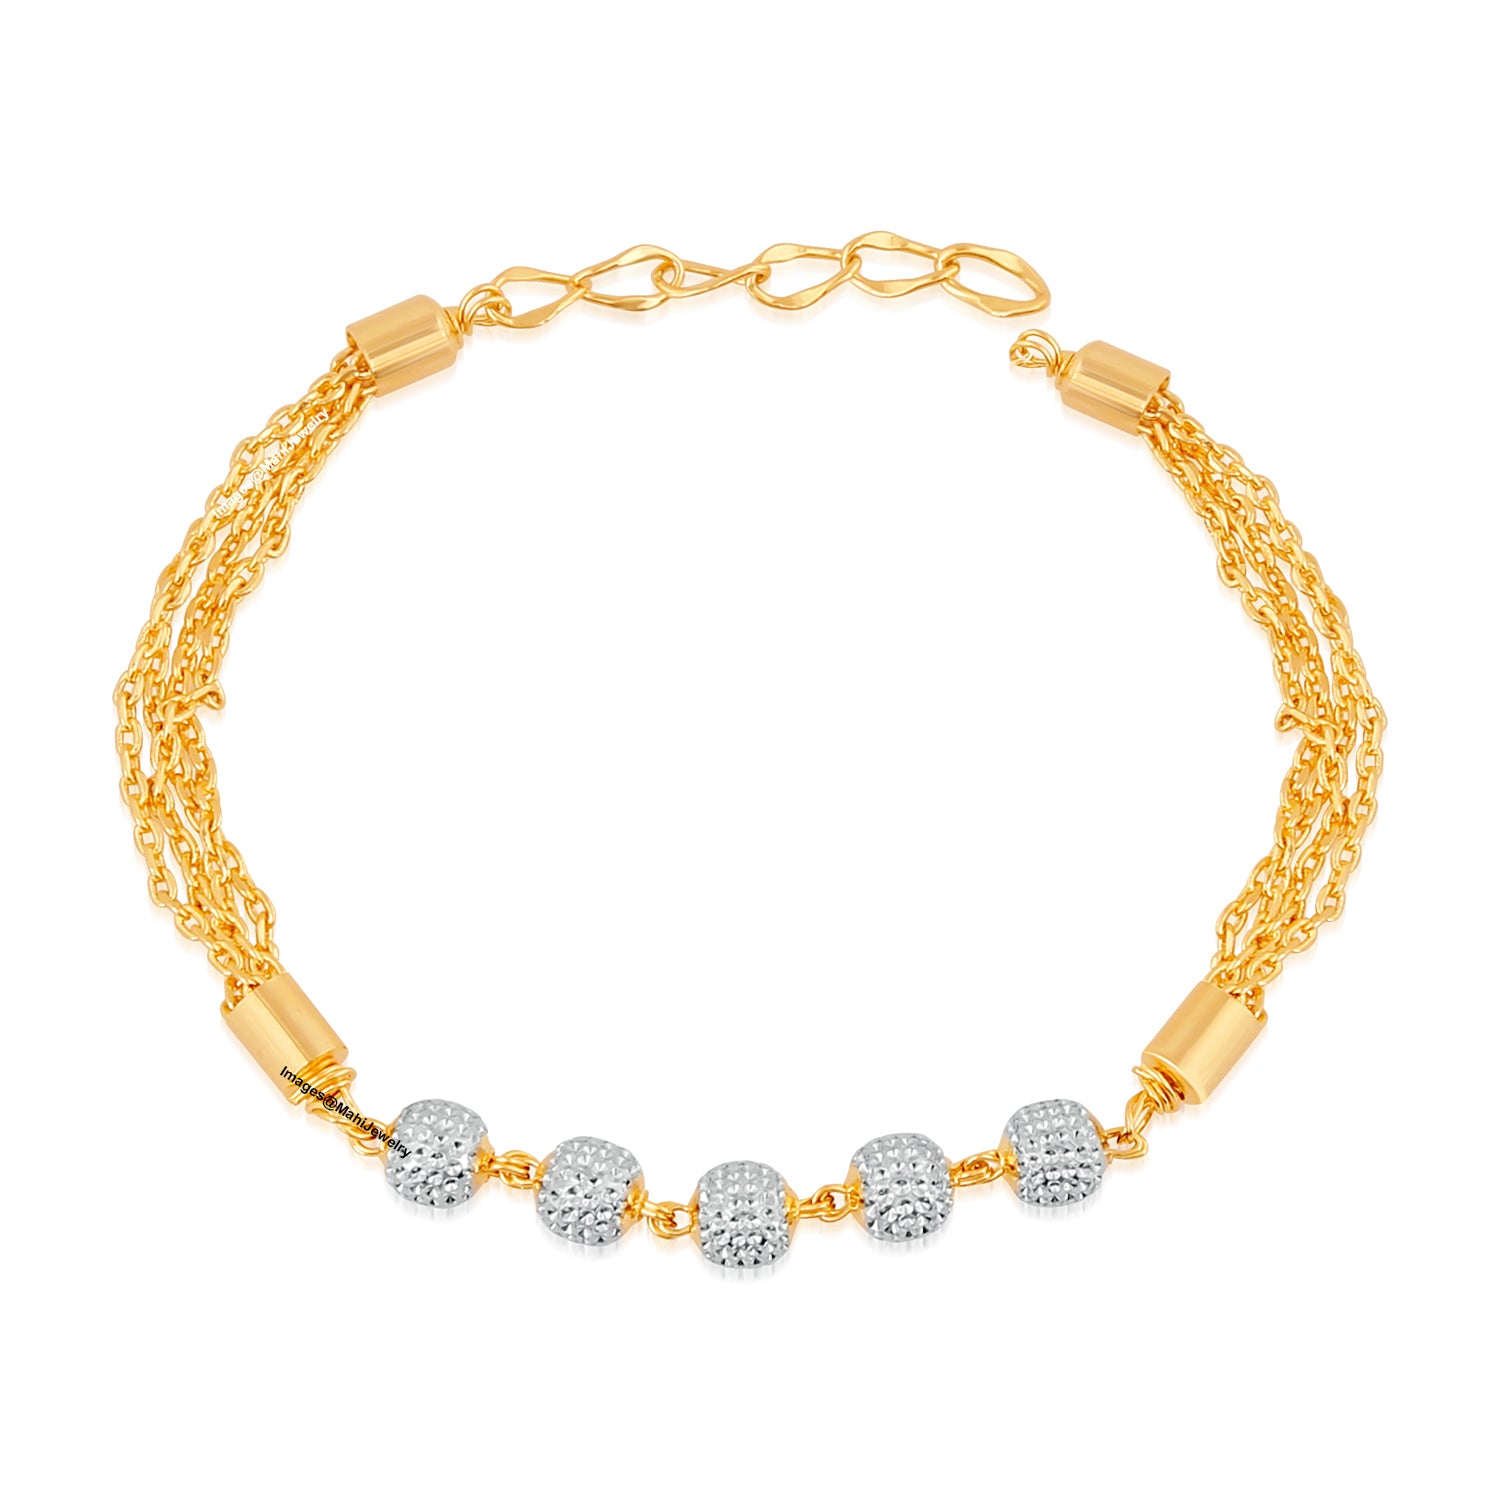 Sparkling white crystals adjustable bracelet